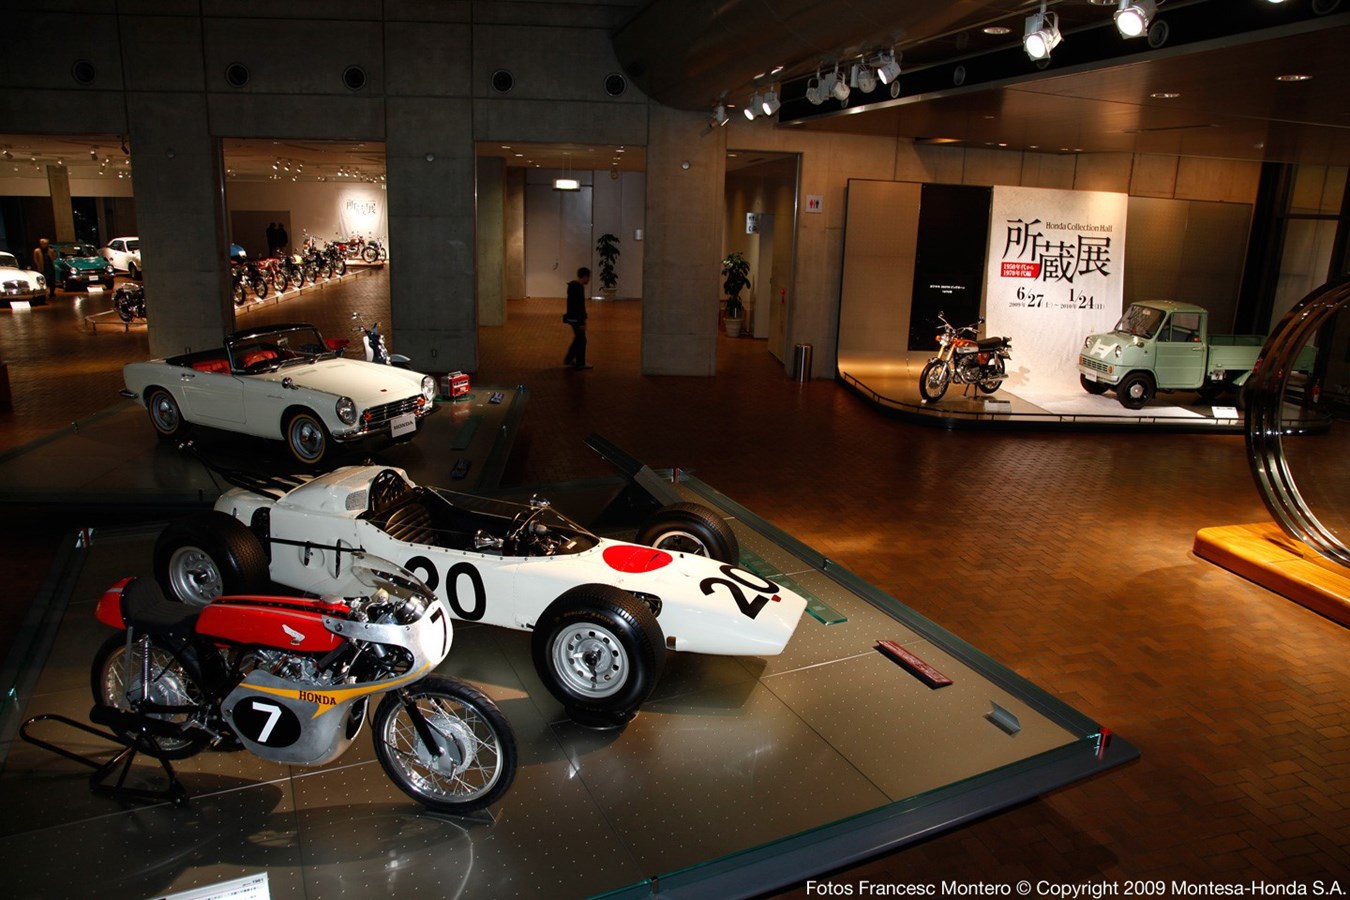 Visita virtual por el Honda Collection Hall para disfrutar desde casa de la historia y la colección de motor de la marca Visita virtual por el Honda Collection Hall para disfrutar desde casa de la historia y la colección de motor de la marca 